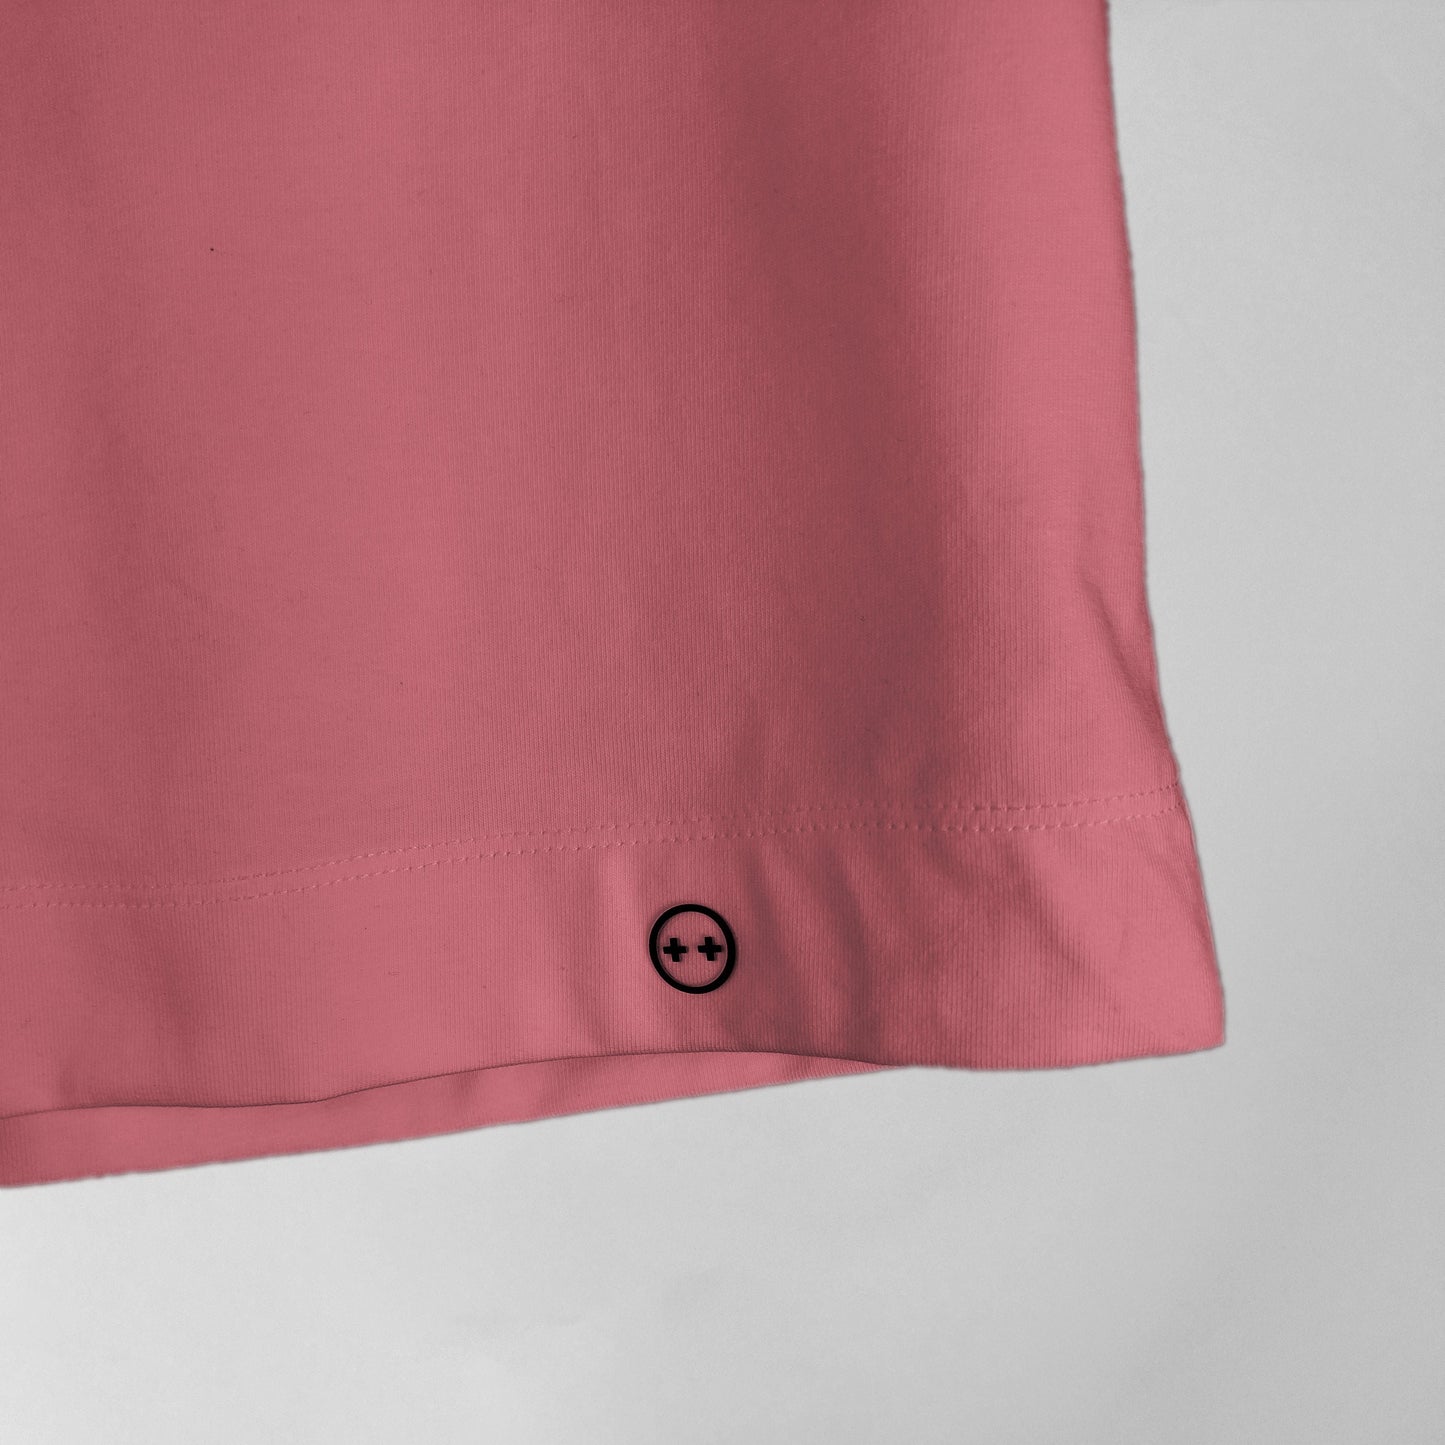 Detalle de ruedos anchos y logo siabatto color salmón (rosa)